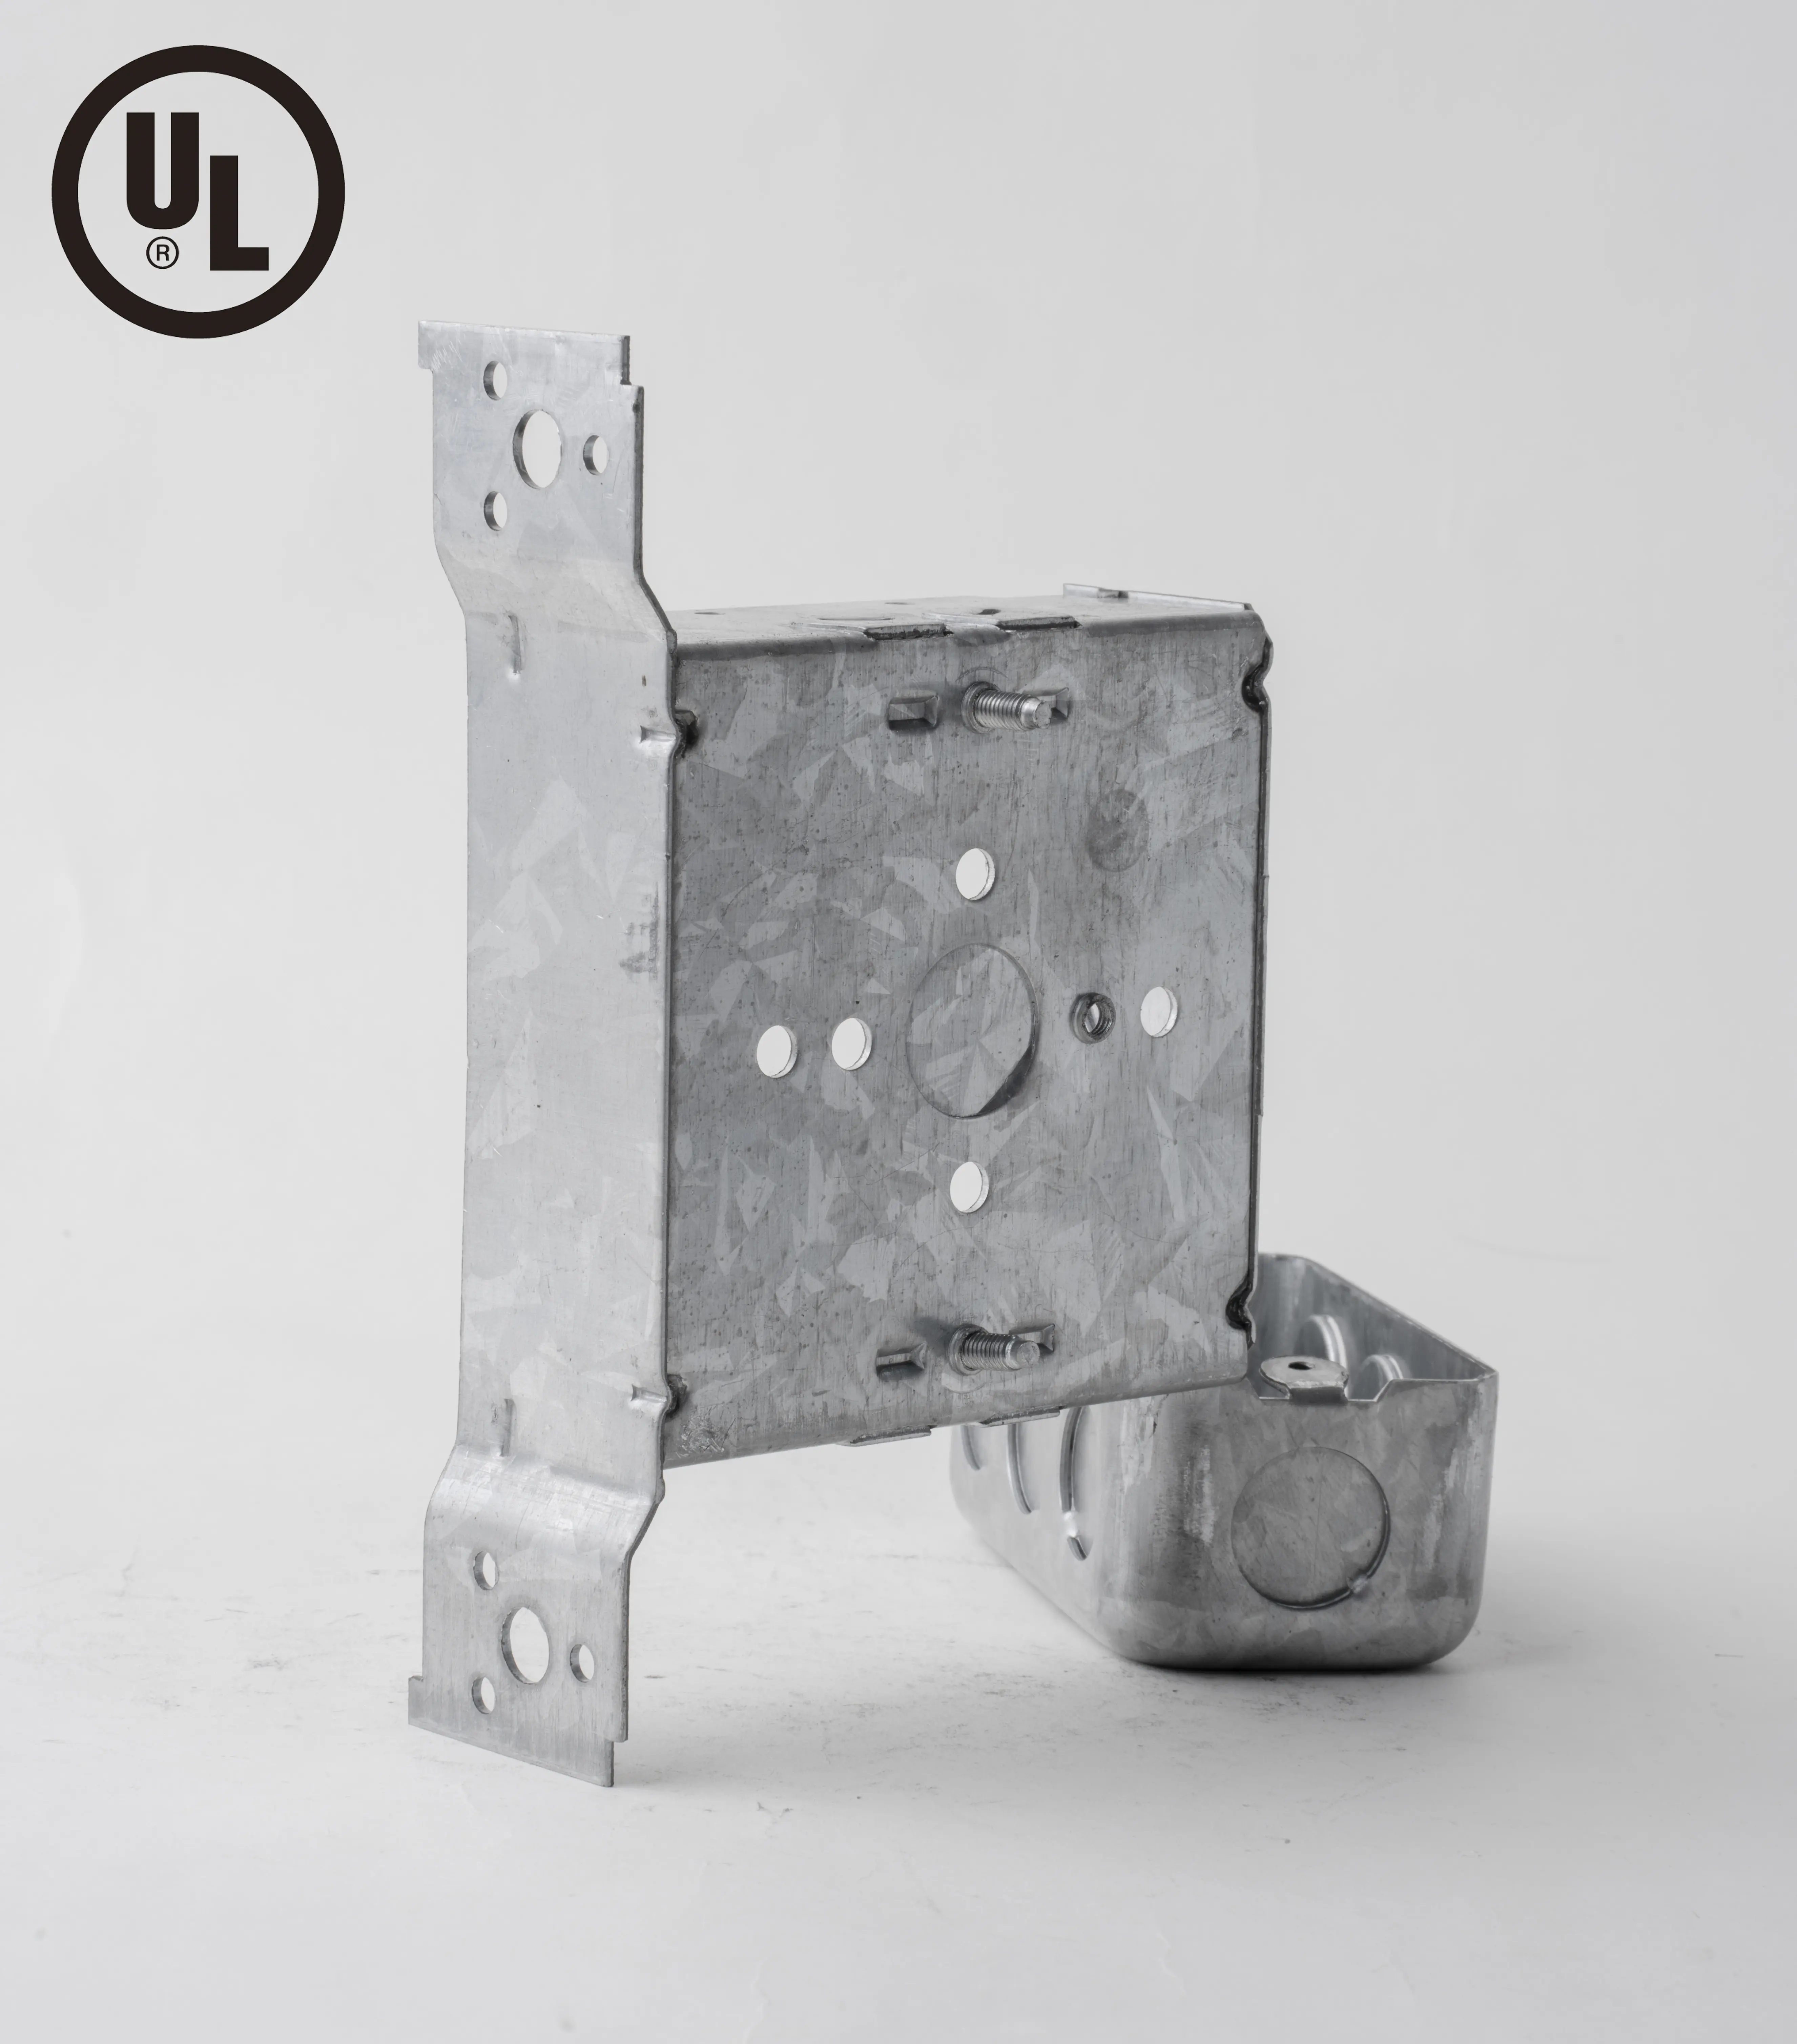 UL認定4インチスクエア1-1/2 ''ディープスタンダードメタルボックスIP54保護レベルスチールウォール溶接電気ジャンクションボックス